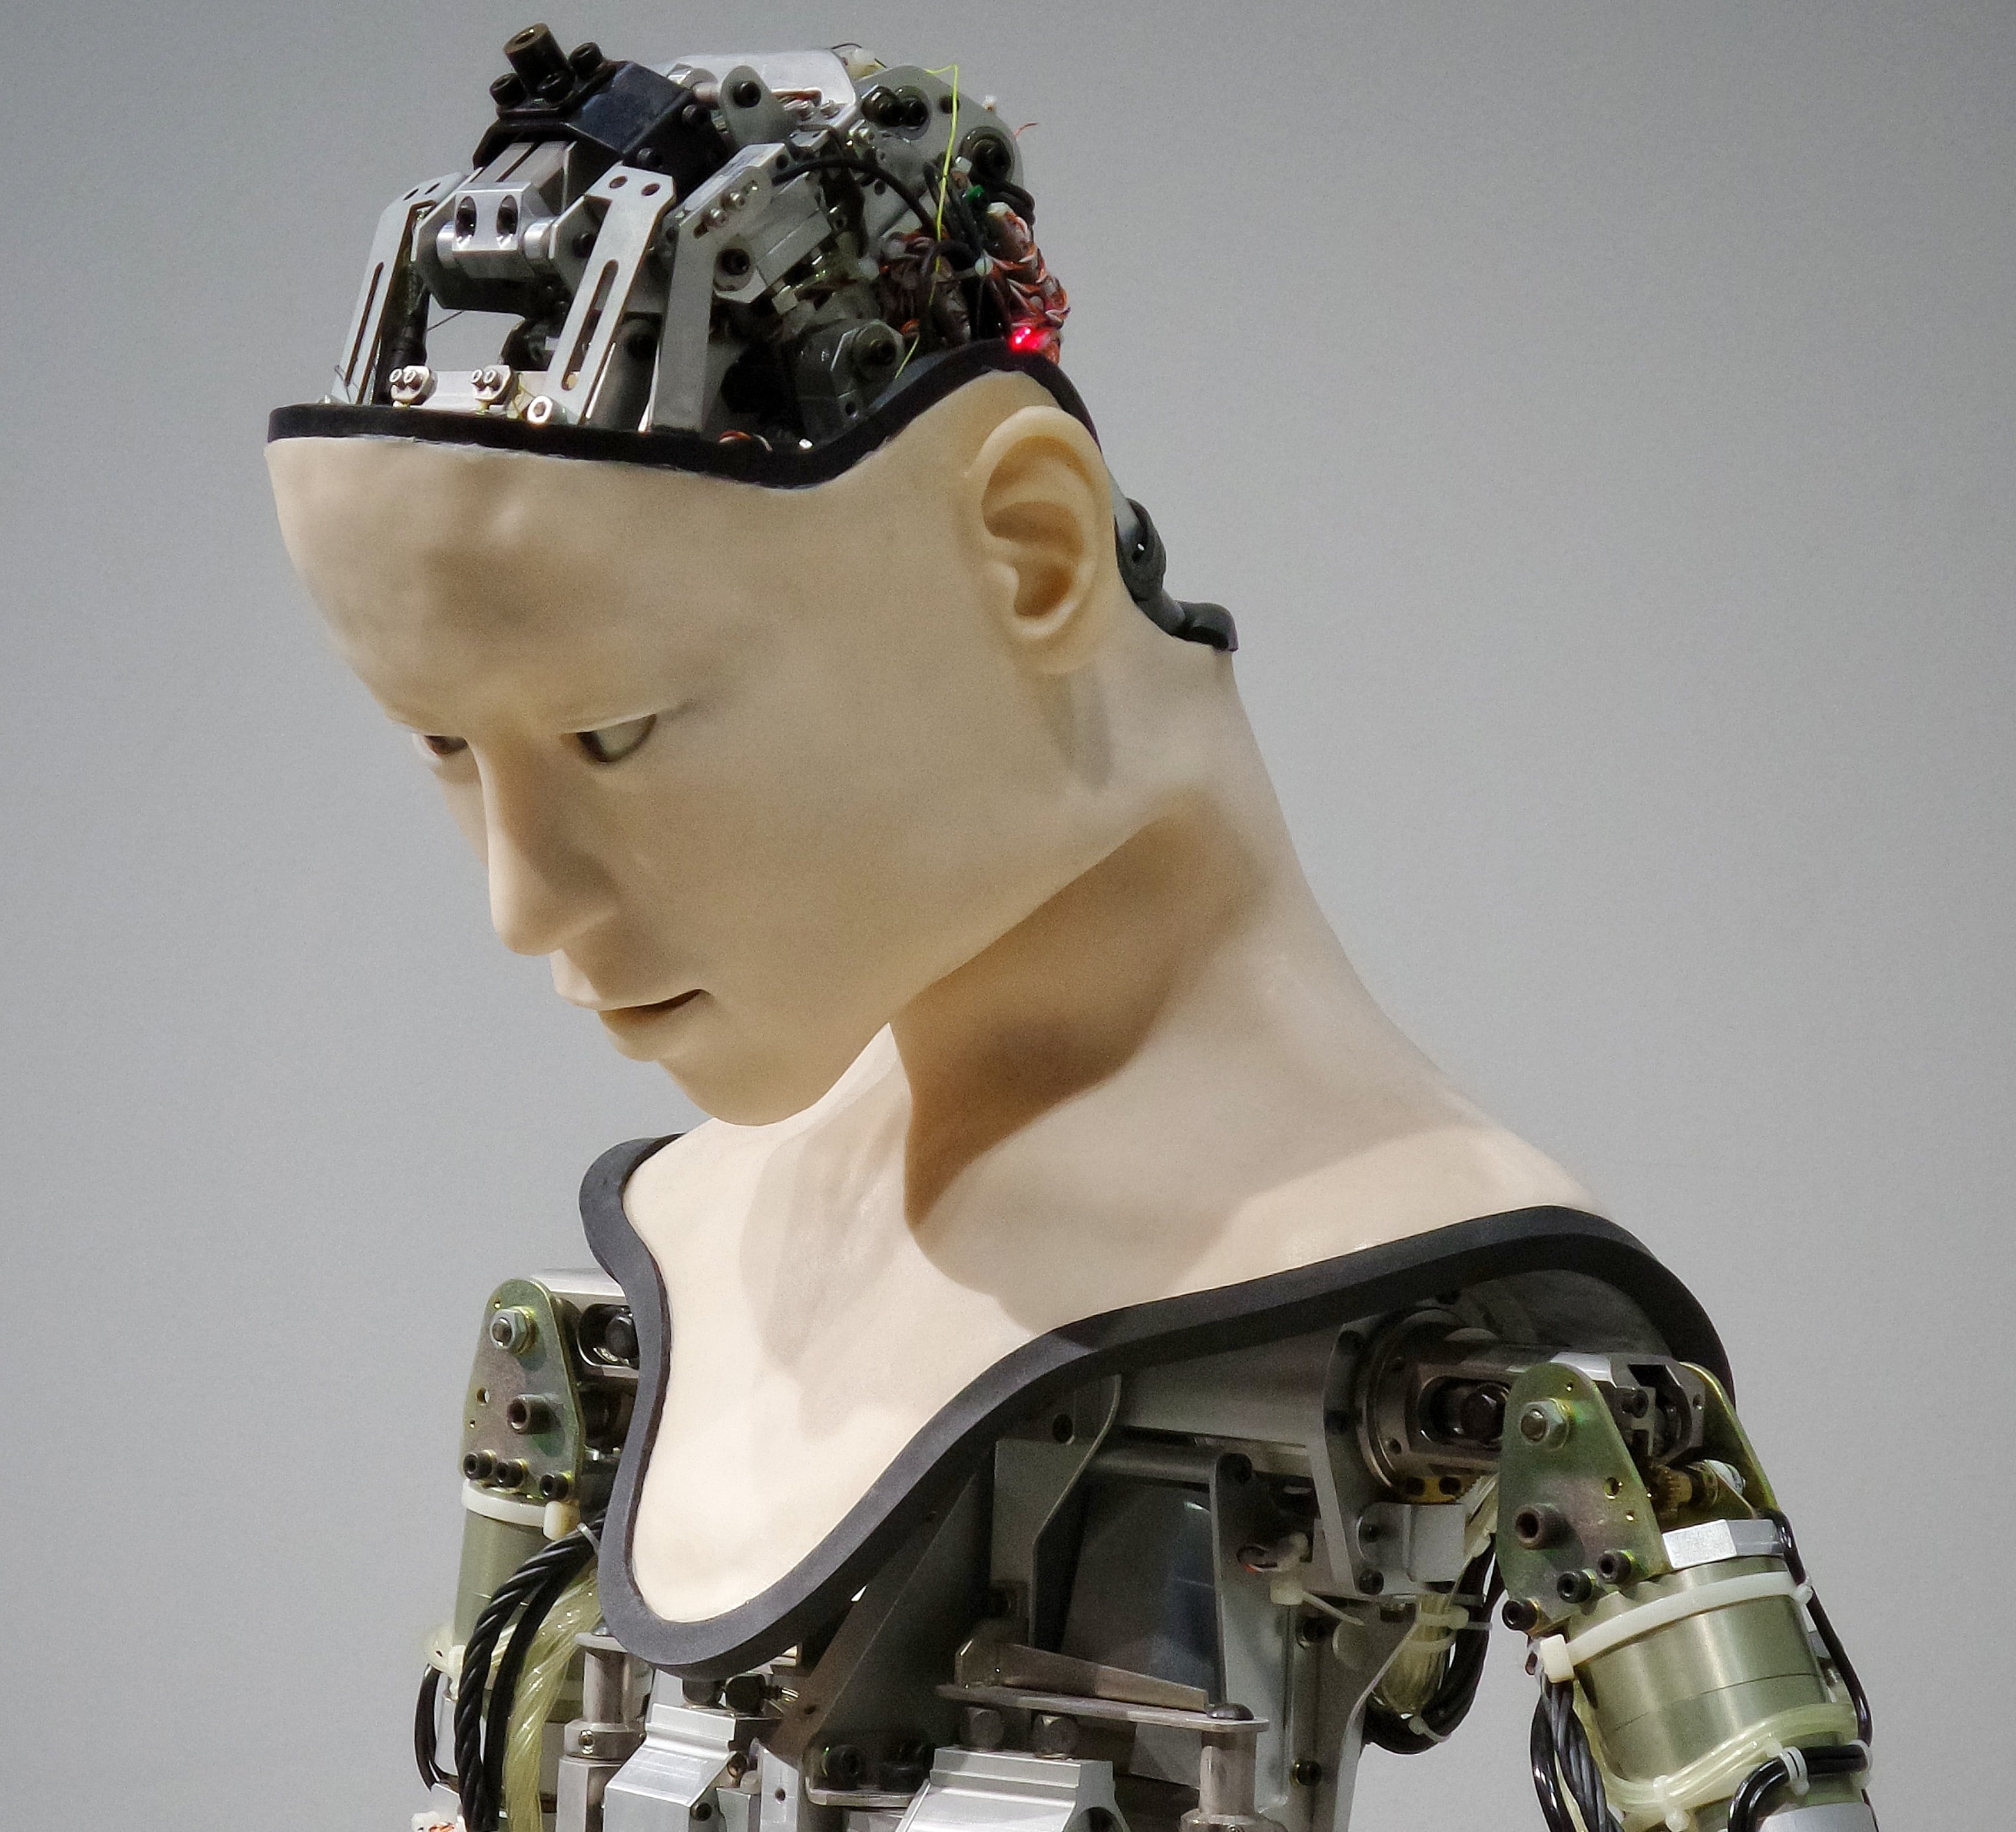 The bust of a half-built robot